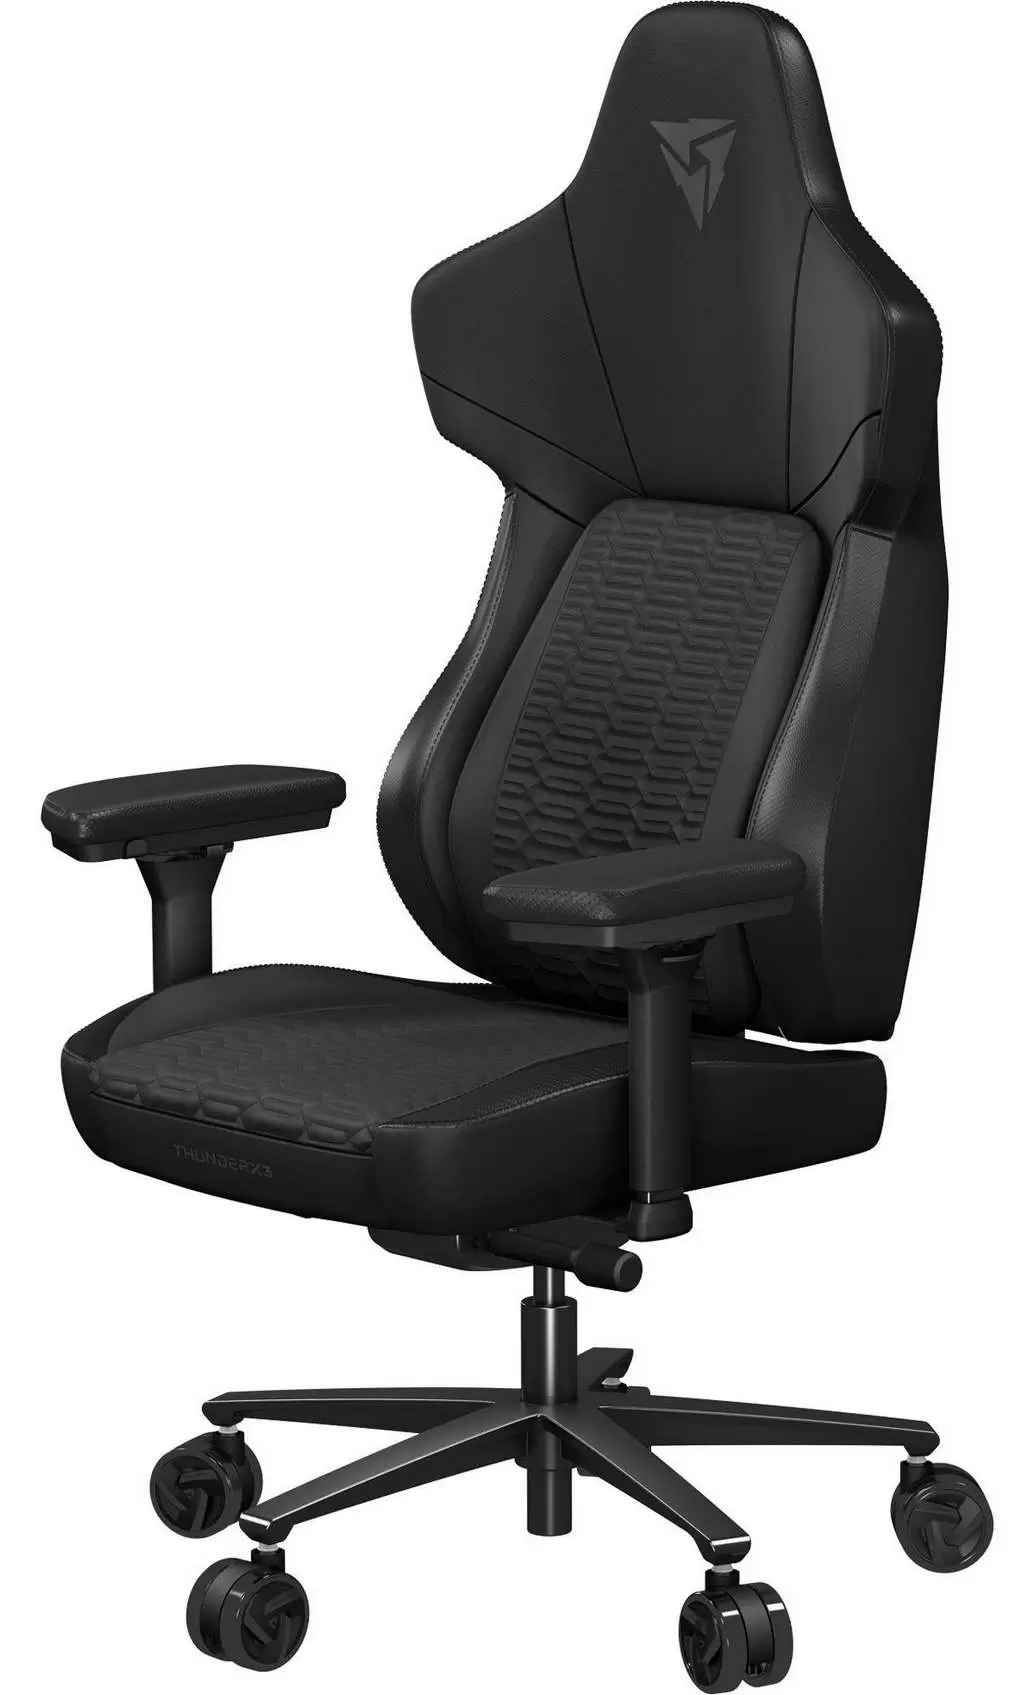 Геймерское кресло ThunderX3 Core Racer, черный